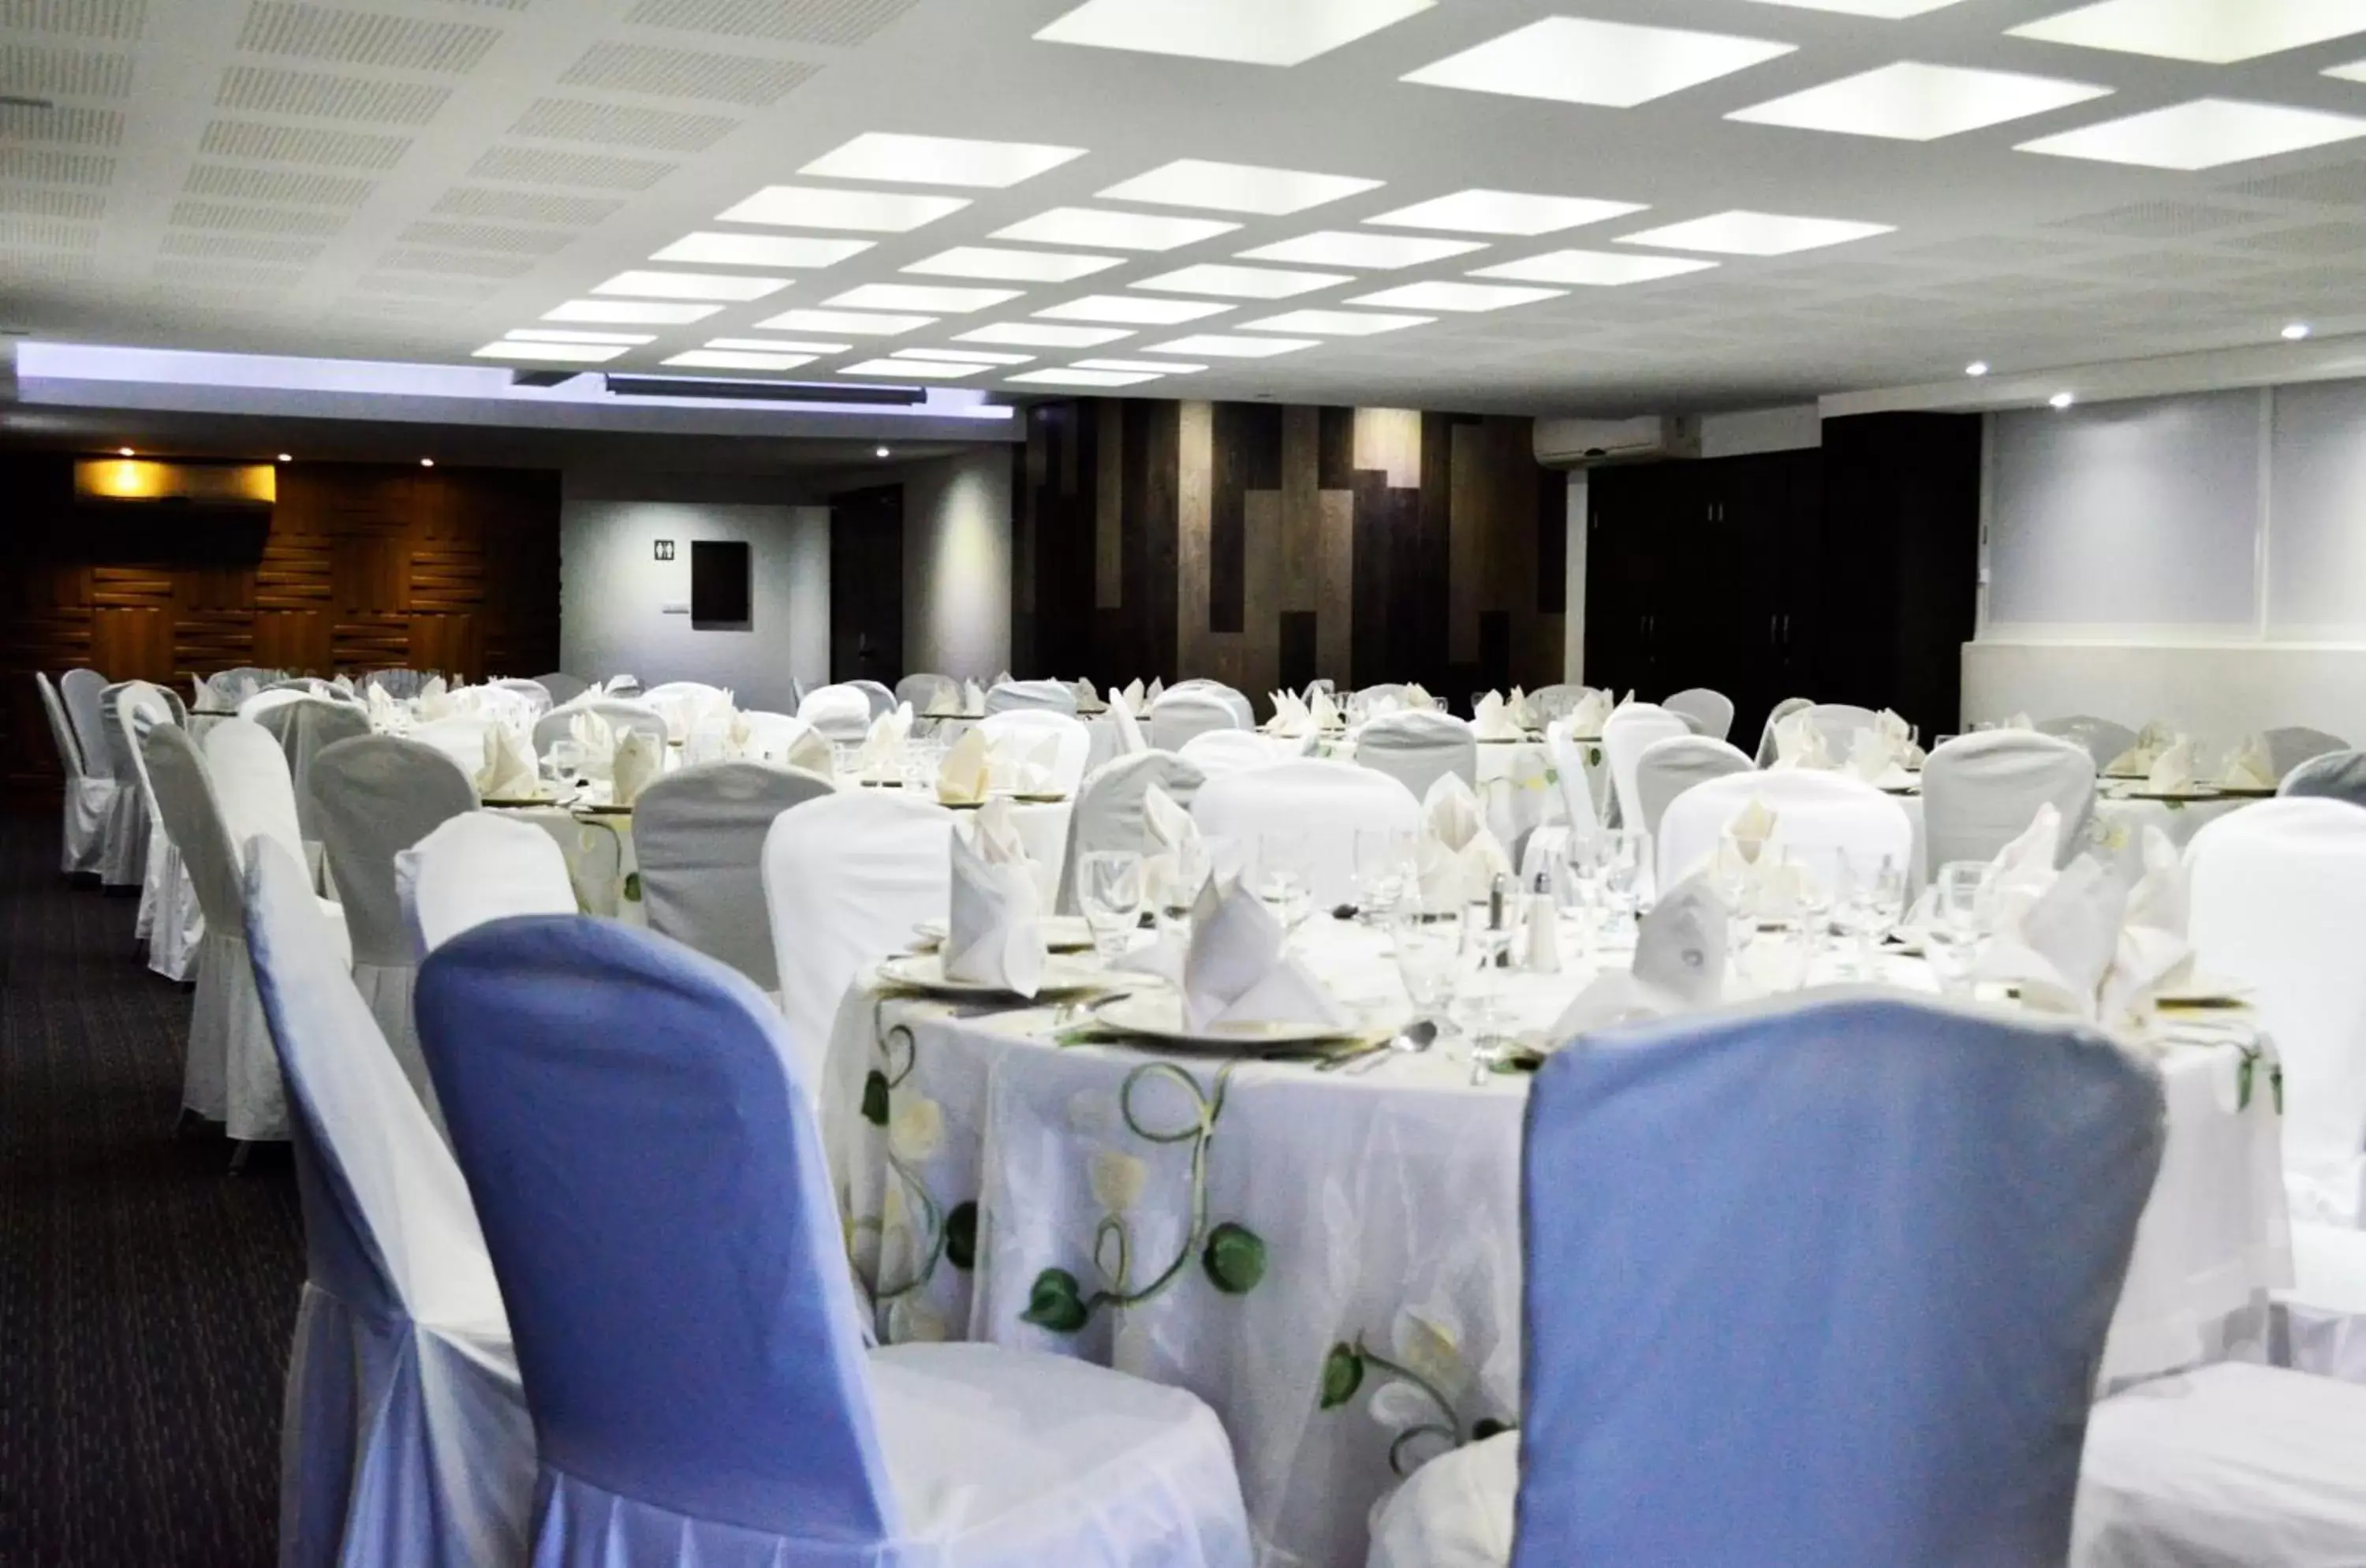 Banquet/Function facilities, Banquet Facilities in LaiLa Hotel CDMX